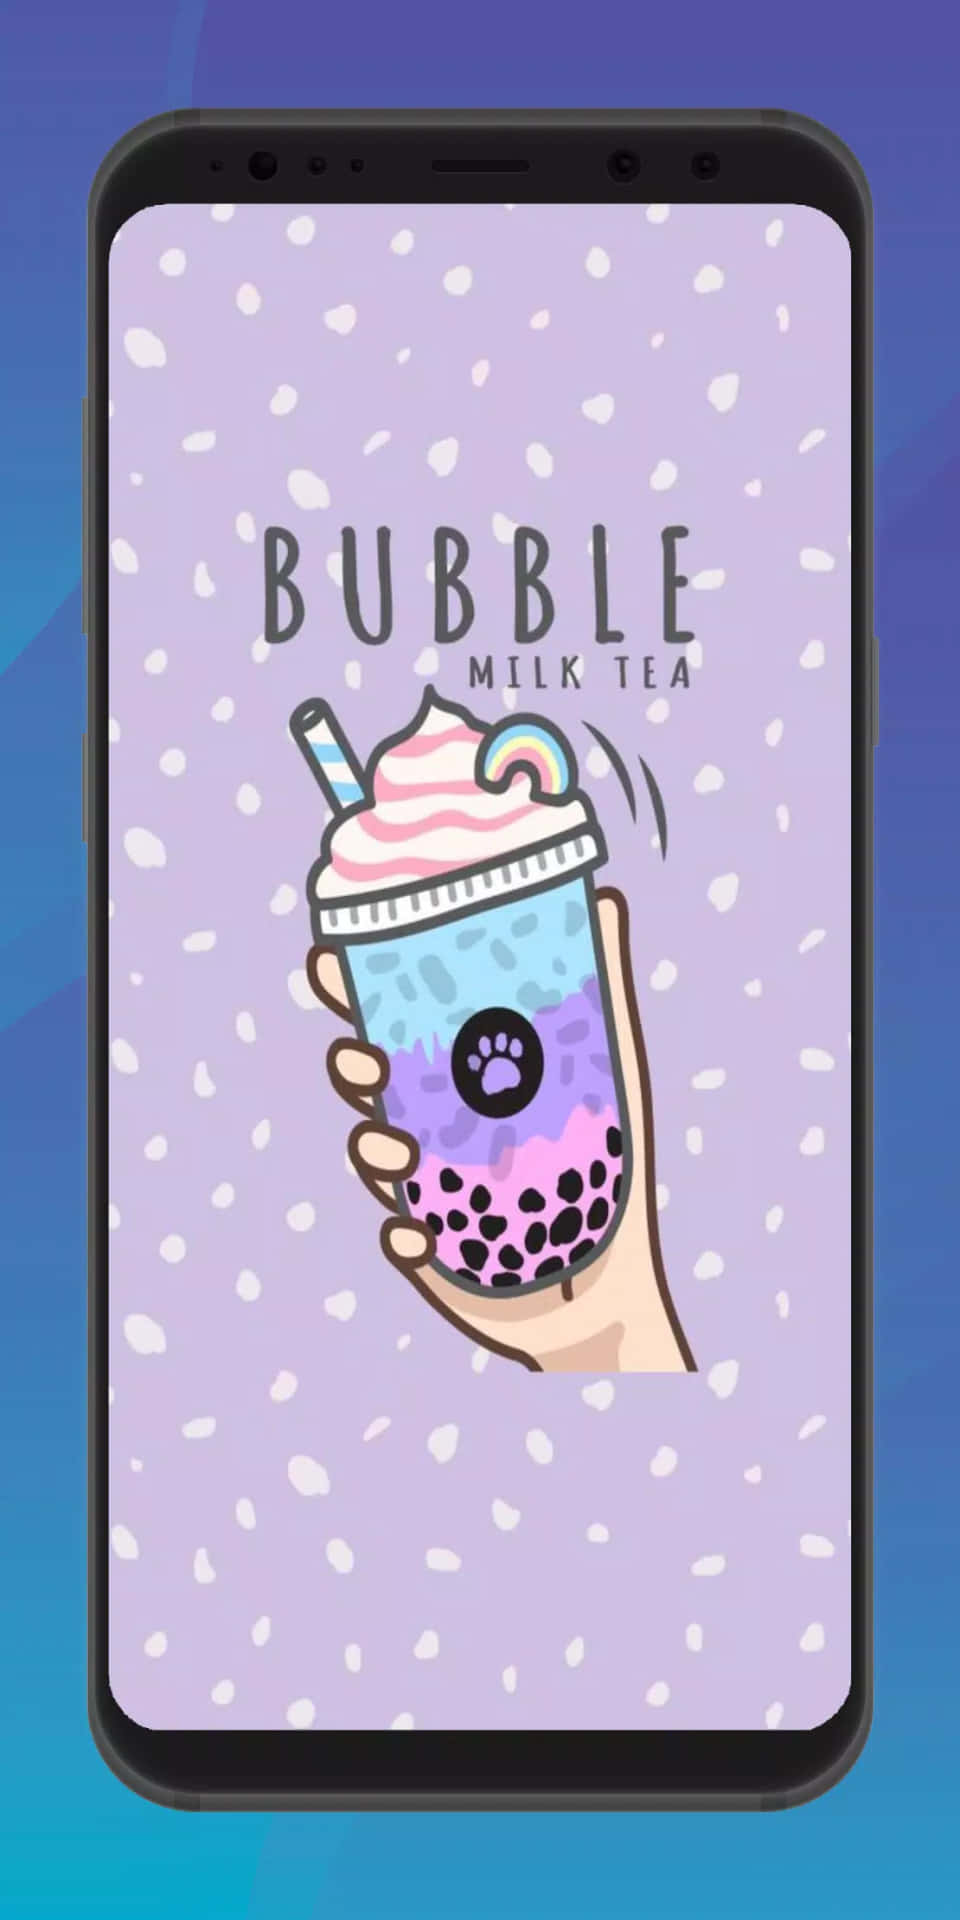 Erfrischedeinen Tag Mit Einem Leckeren Bubble Tea Anime. Wallpaper